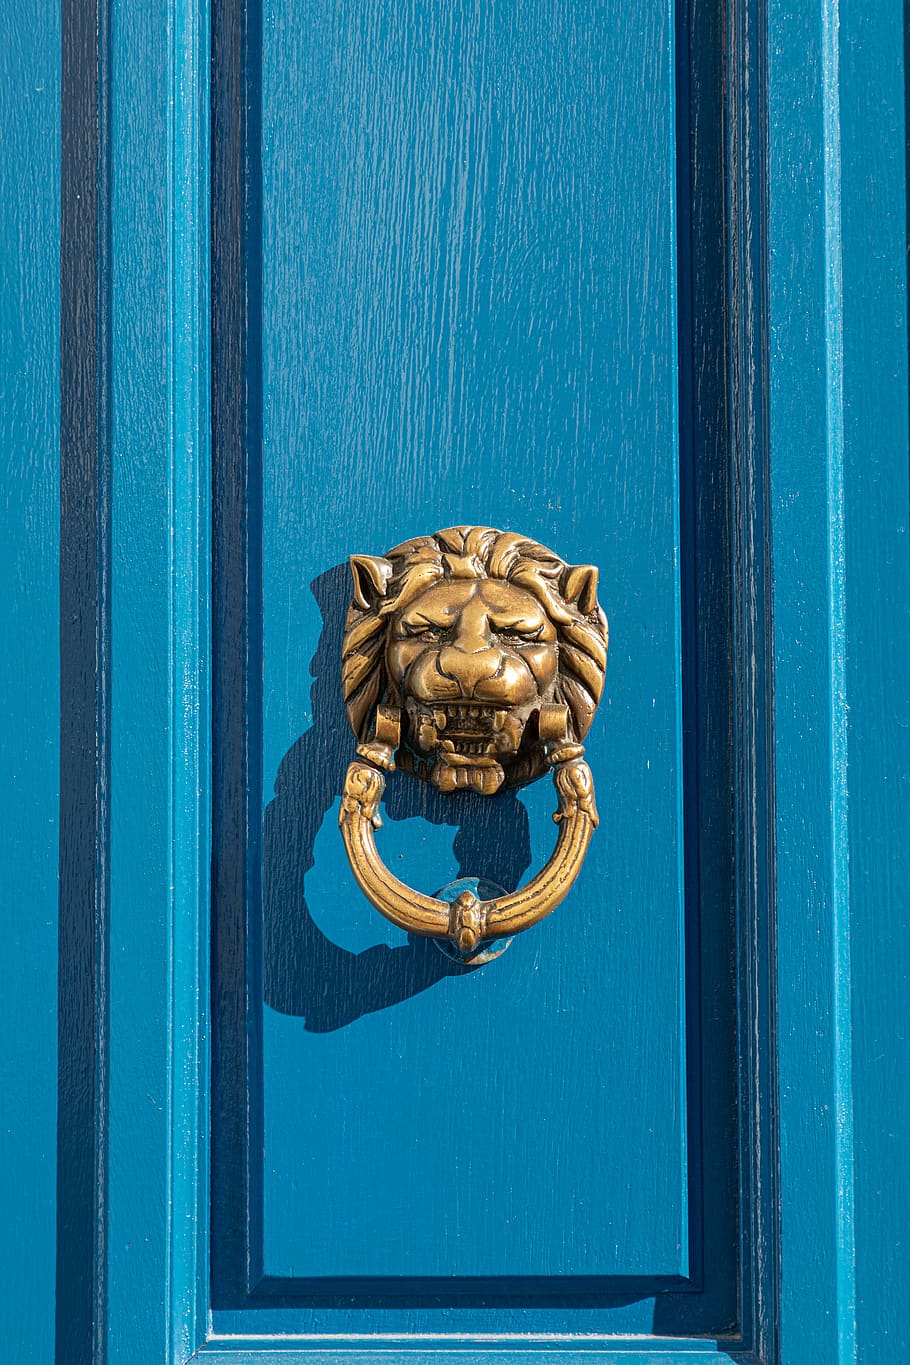 gagang pintu, singa, pintu, biru, emas, kuningan, jalan masuk, kepala, menangani, Arsitektur